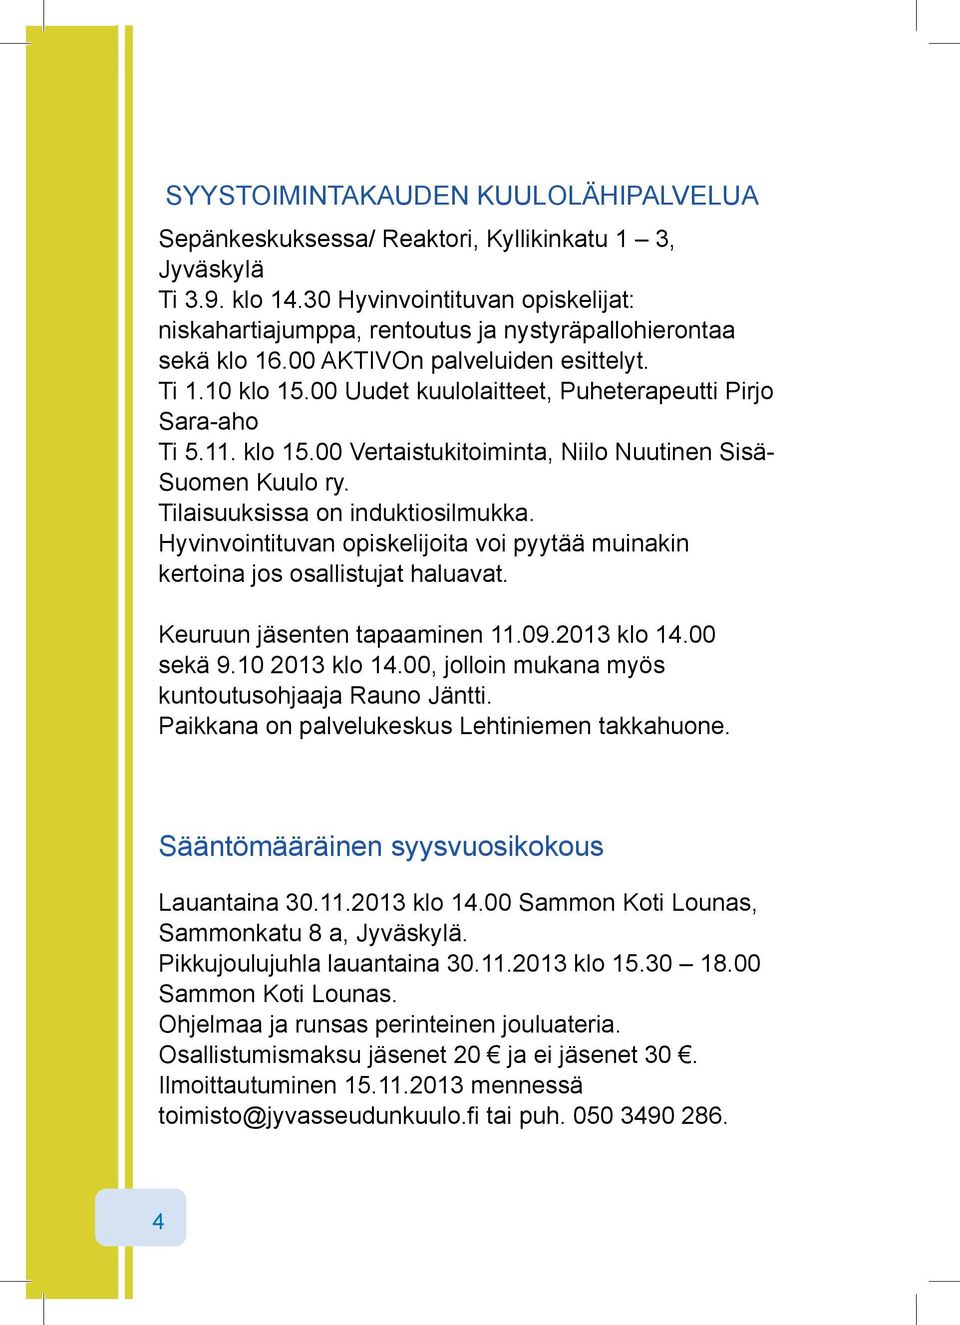 00 Uudet kuulolaitteet, Puheterapeutti Pirjo Sara aho Ti 5.11. klo 15.00 Vertaistukitoiminta, Niilo Nuutinen Sisä Suomen Kuulo ry. Tilaisuuksissa on induktiosilmukka.